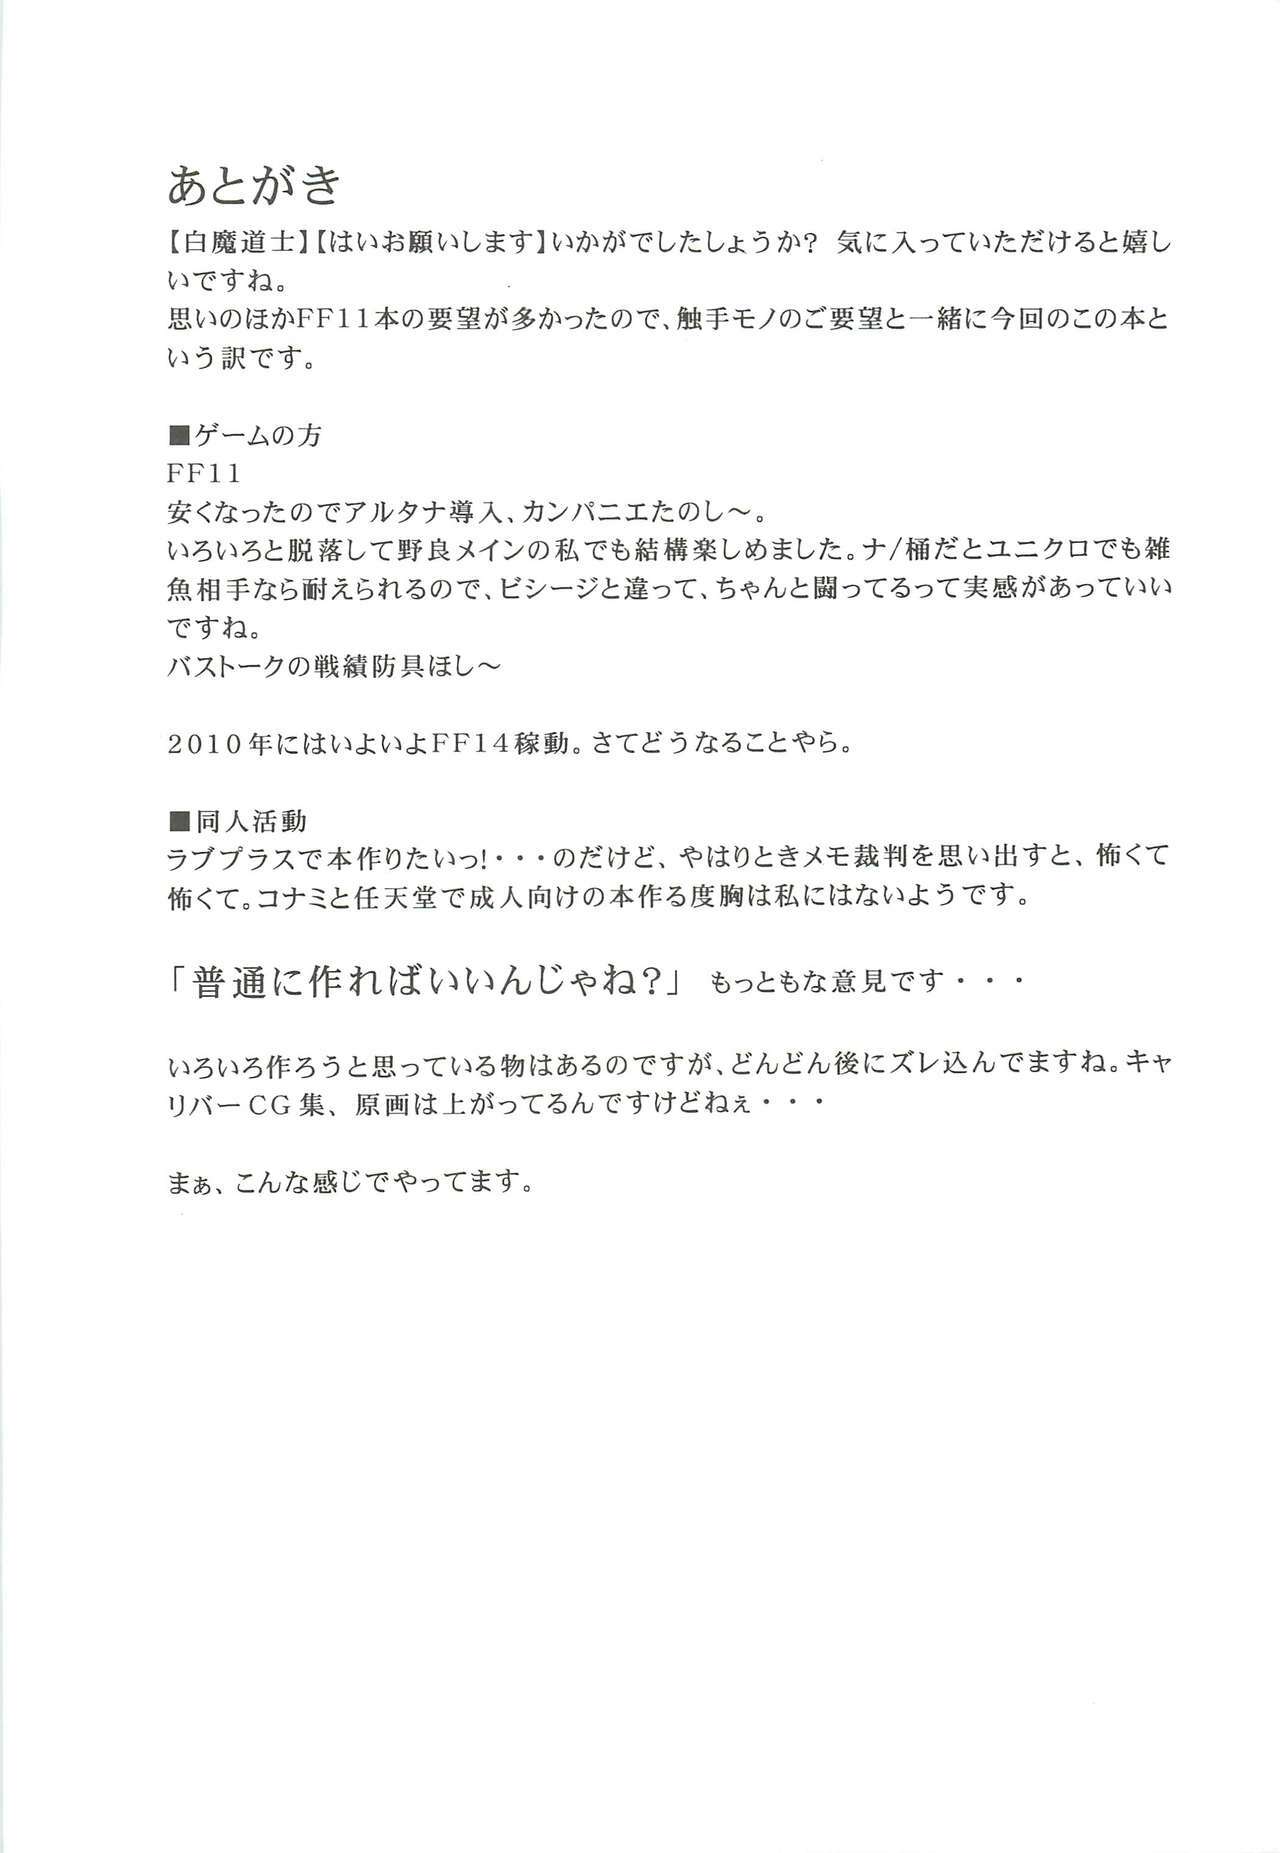 [DELTA BOX (Ishida Masayuki)] Shiromadoushi Hi Onegaishimasu (Final Fantasy I) page 25 full